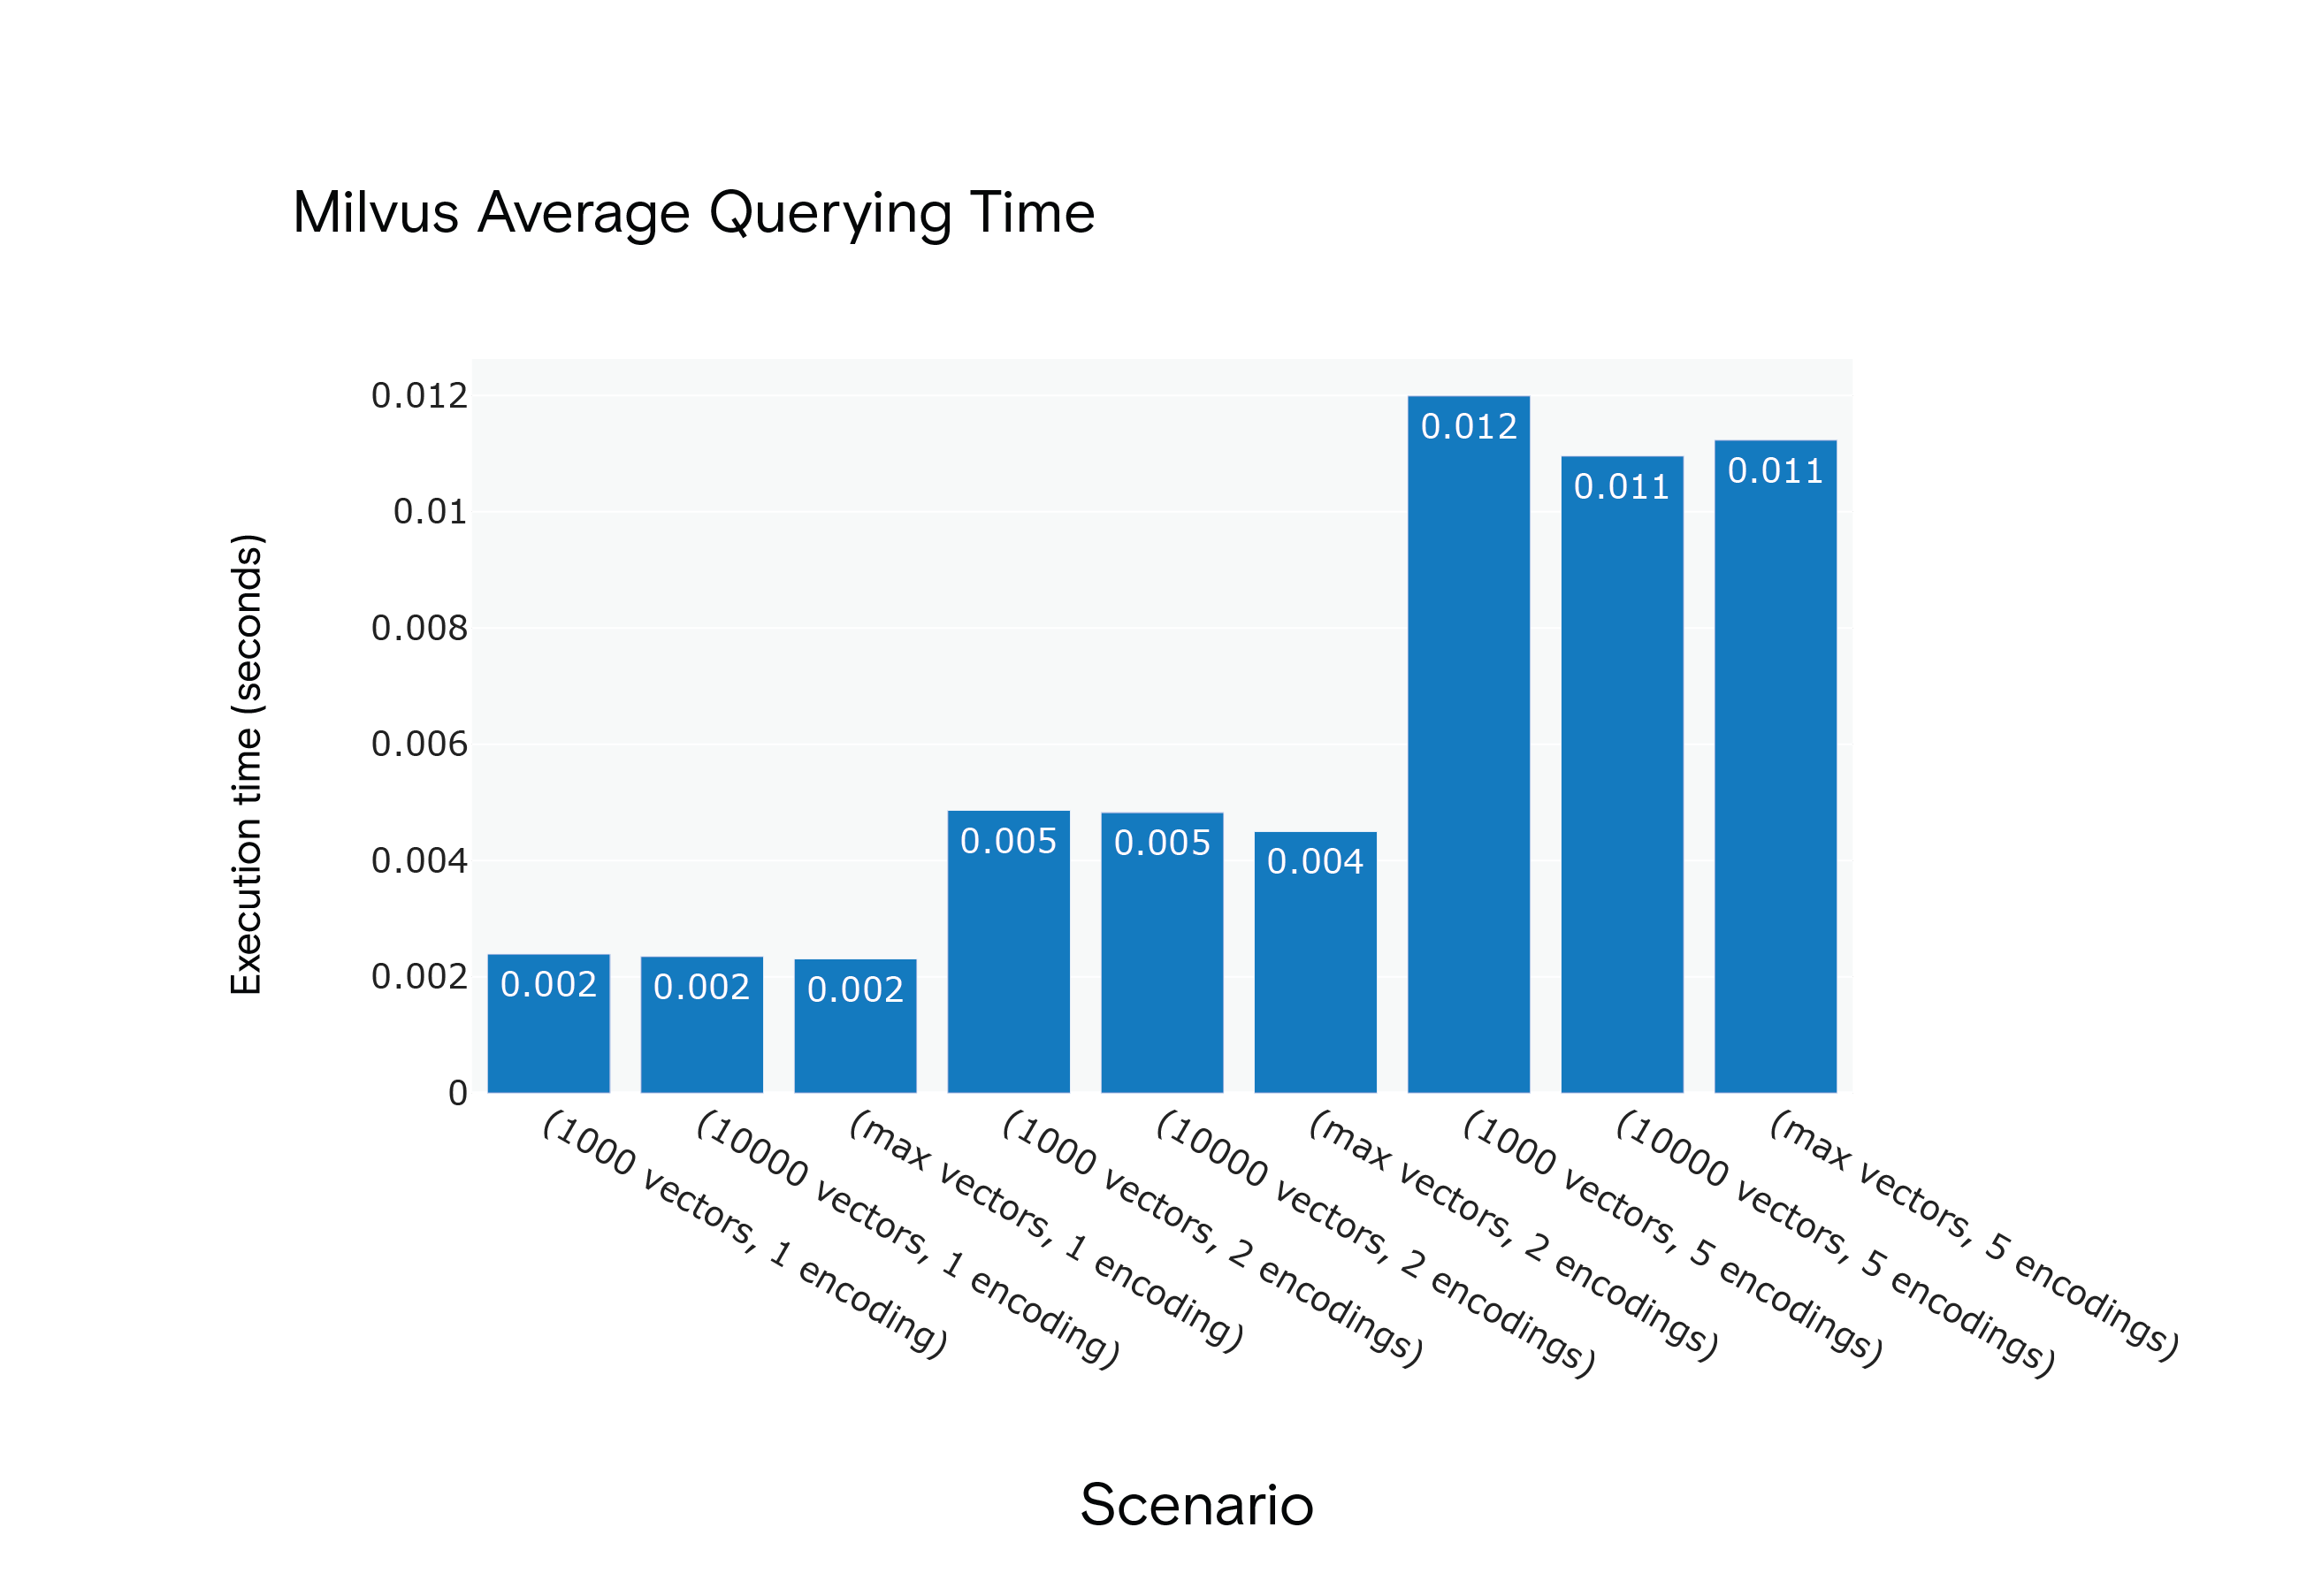 Milvus 1.1.1 Average Querying Time for Scenarios S1 through S9